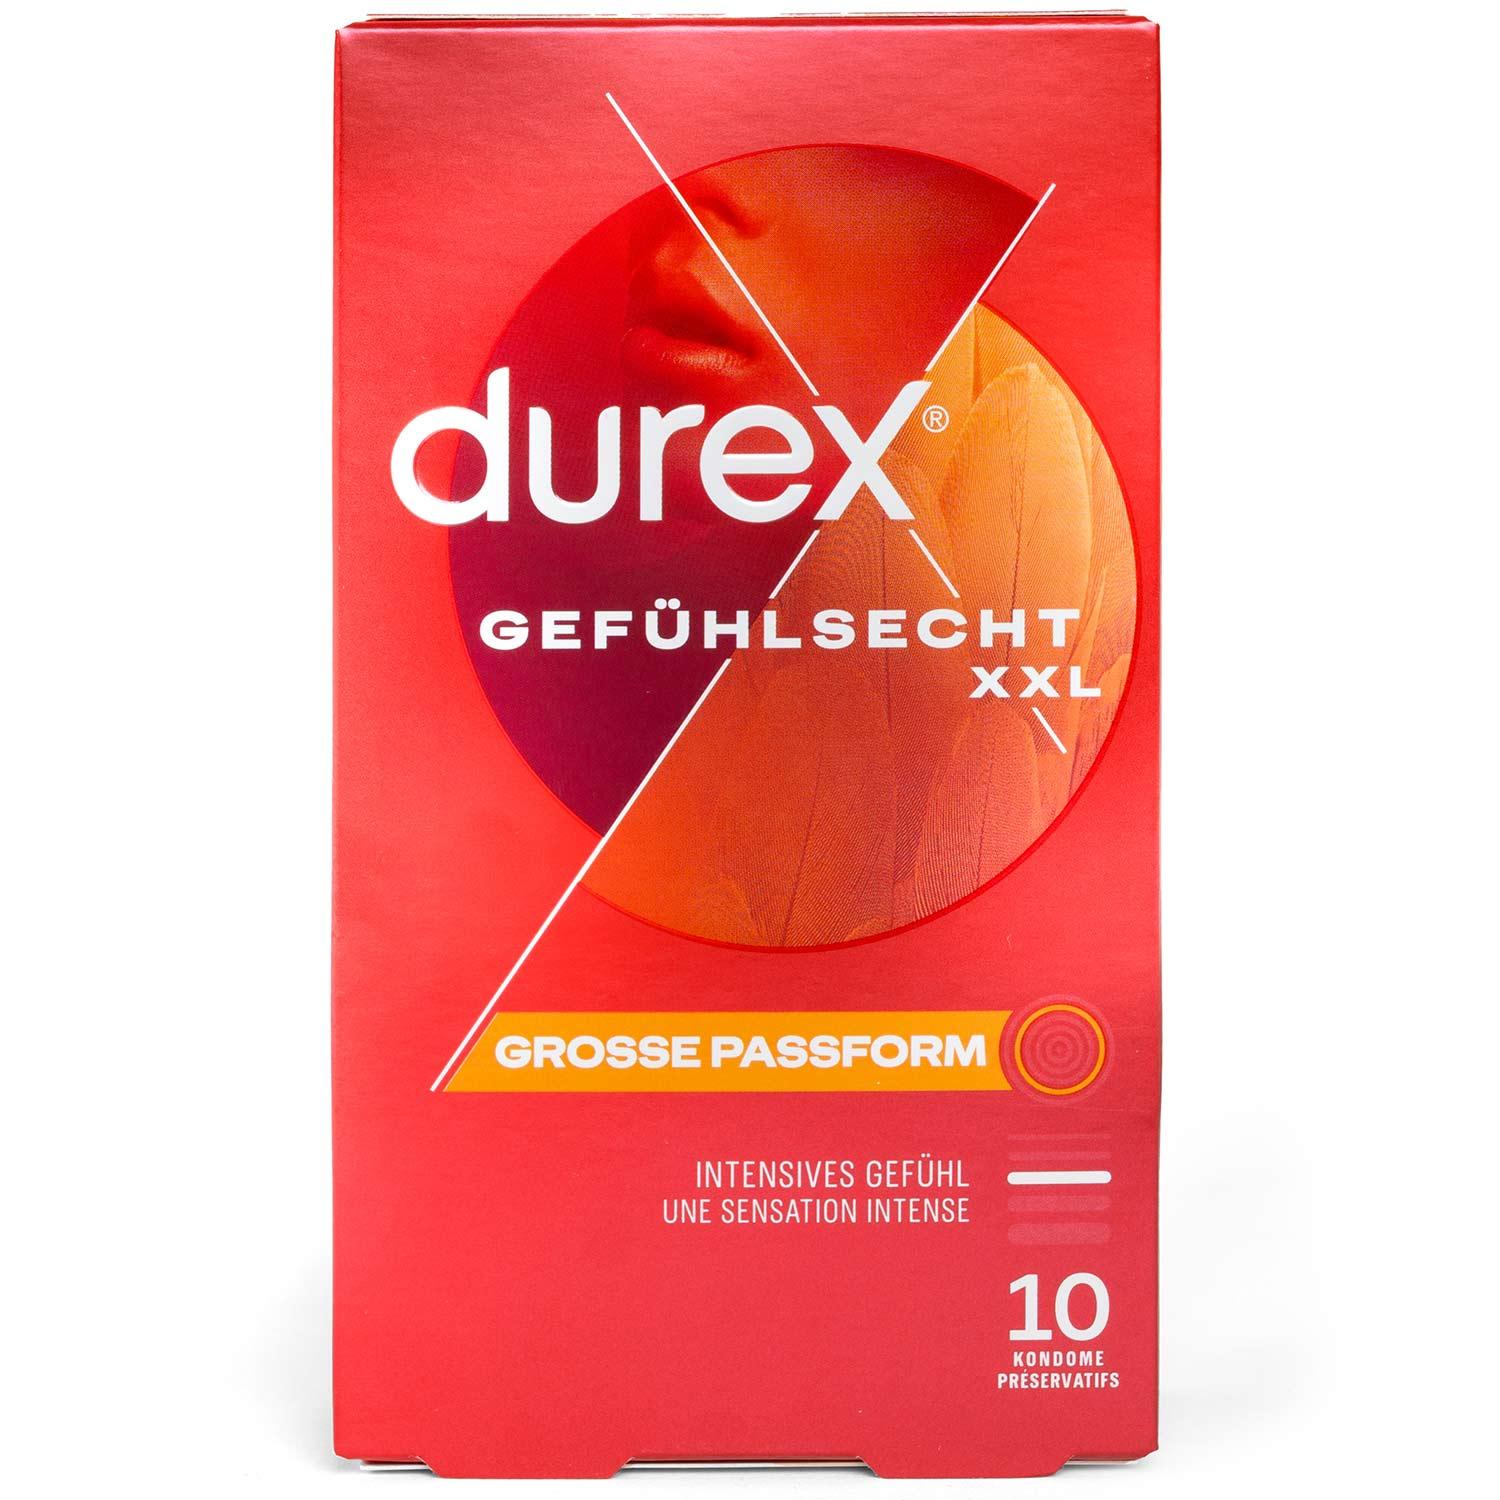 Durex Gefühlsecht XXL Condoms 10pcs, with Reservoir, Ø 60mm, 220mm